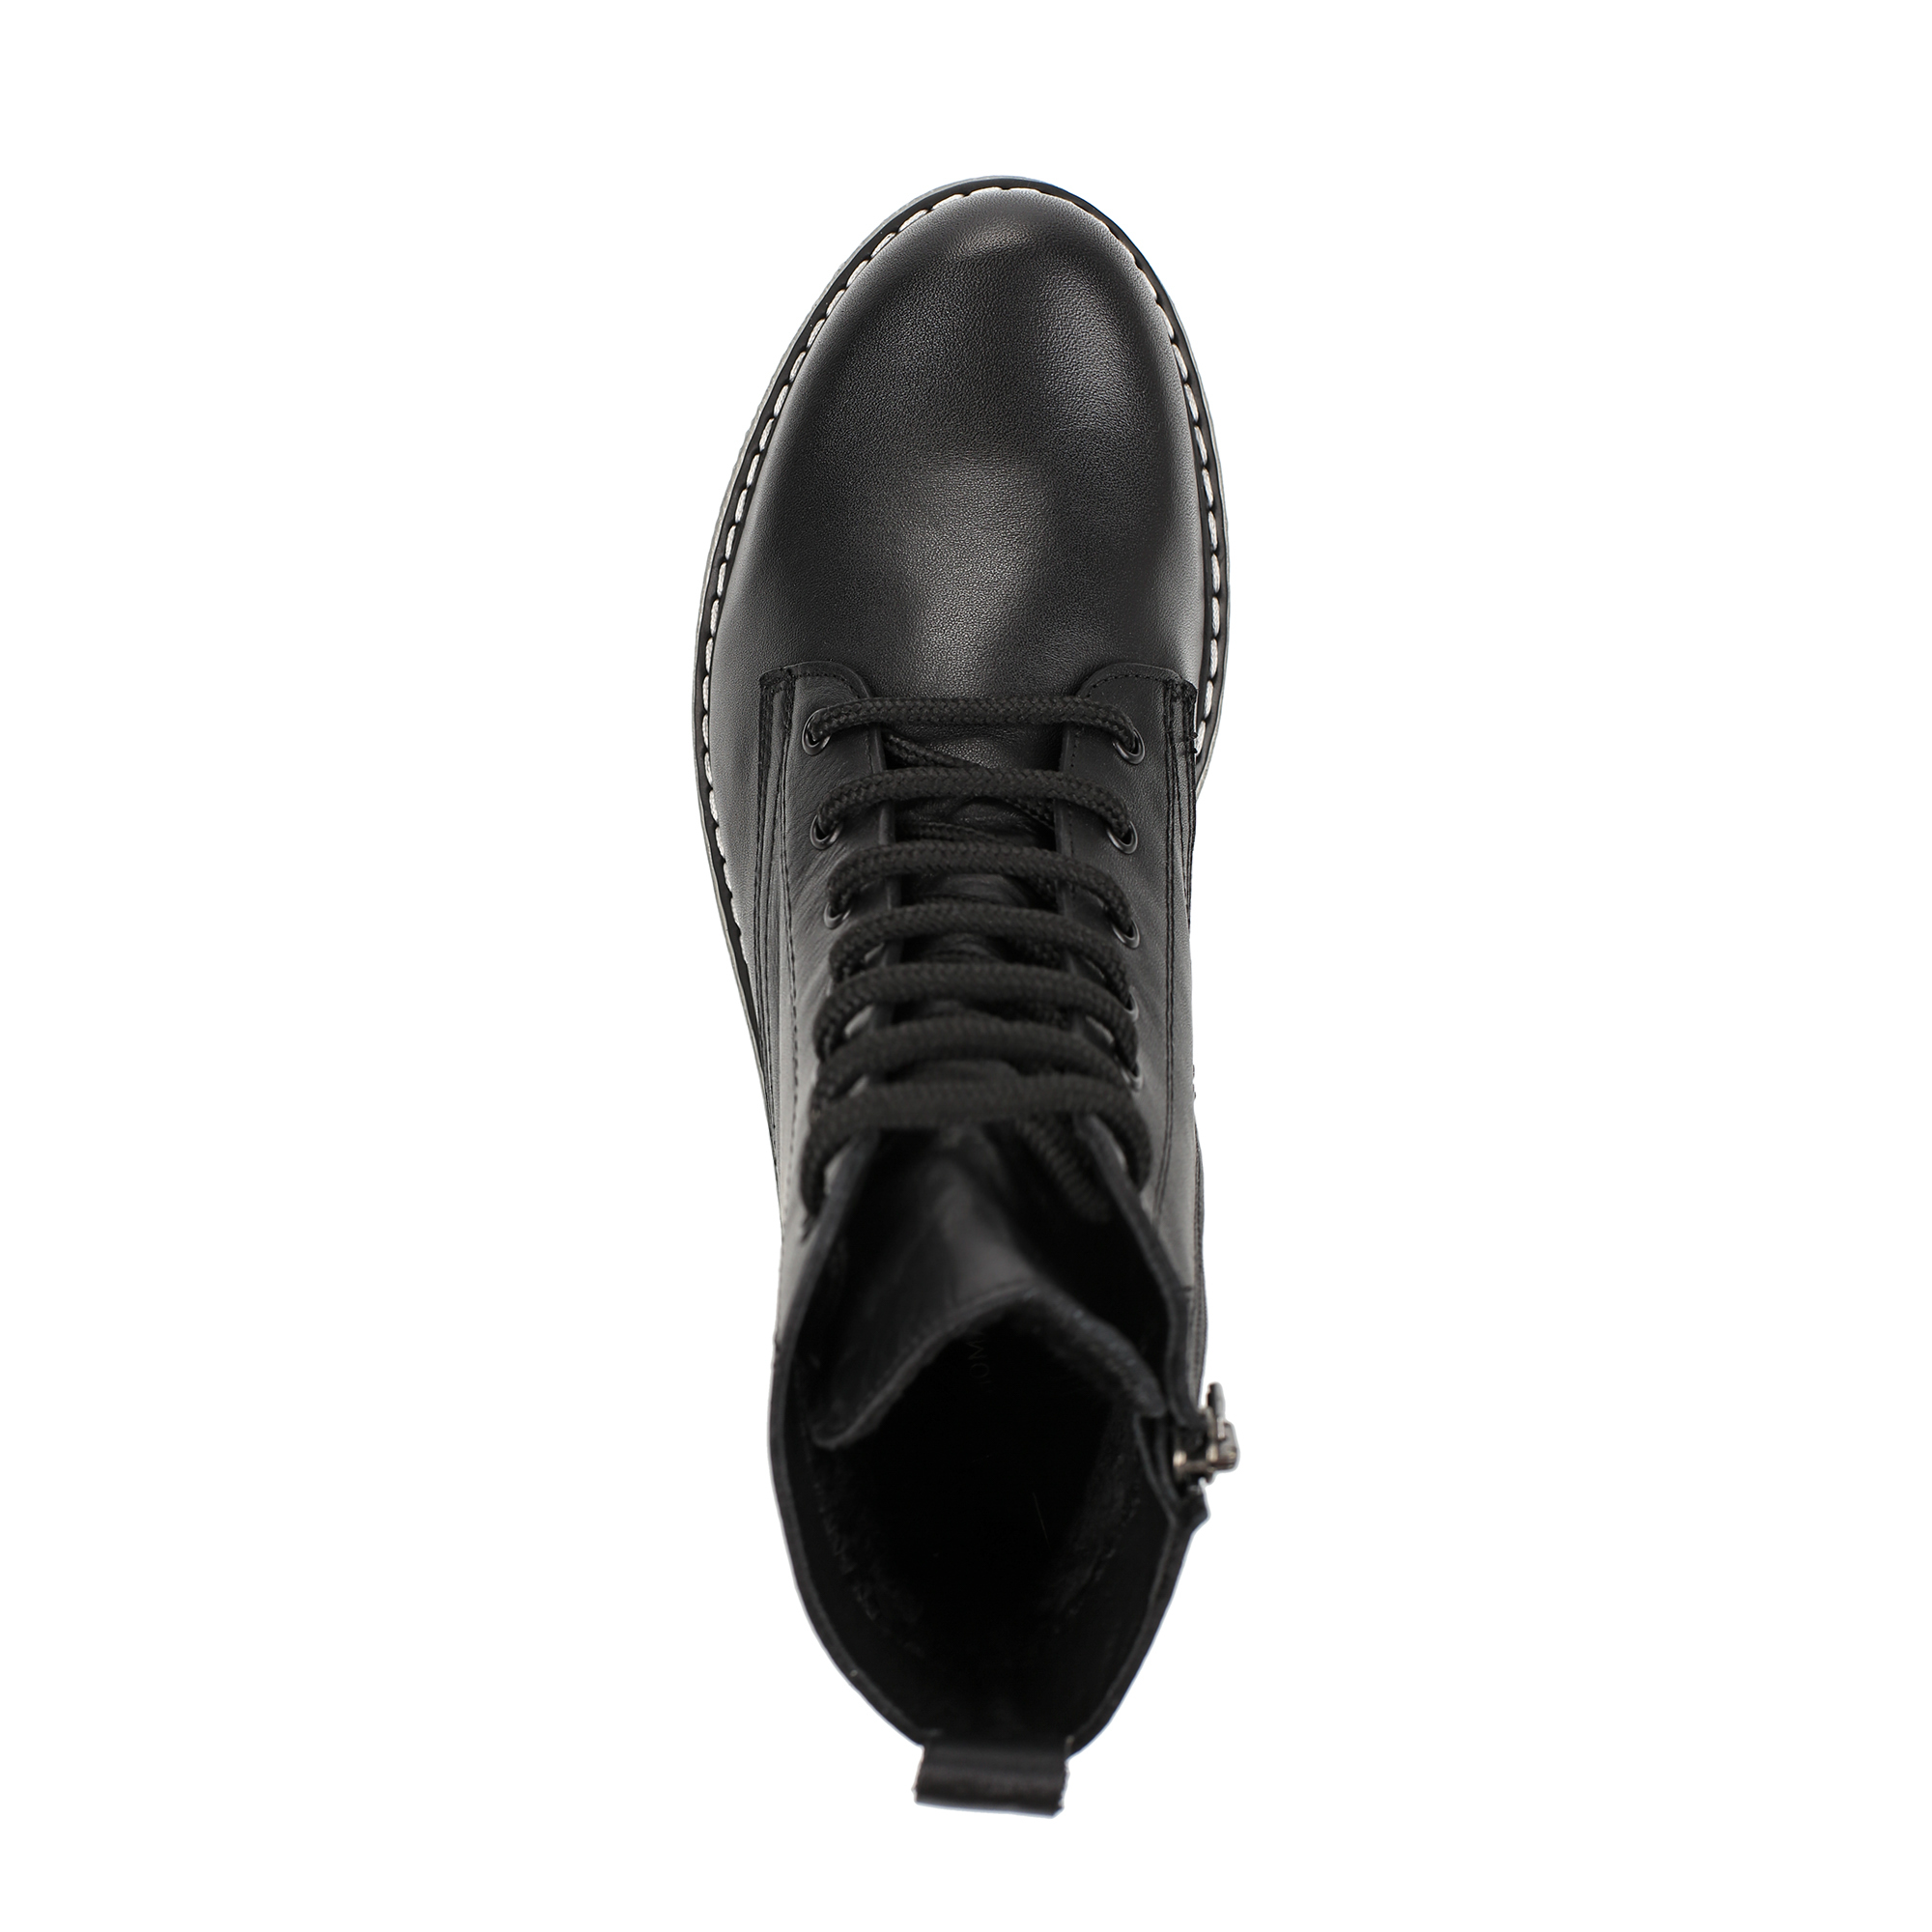 Ботинки Thomas Munz 506-005A-2102, цвет черный, размер 38 - фото 5